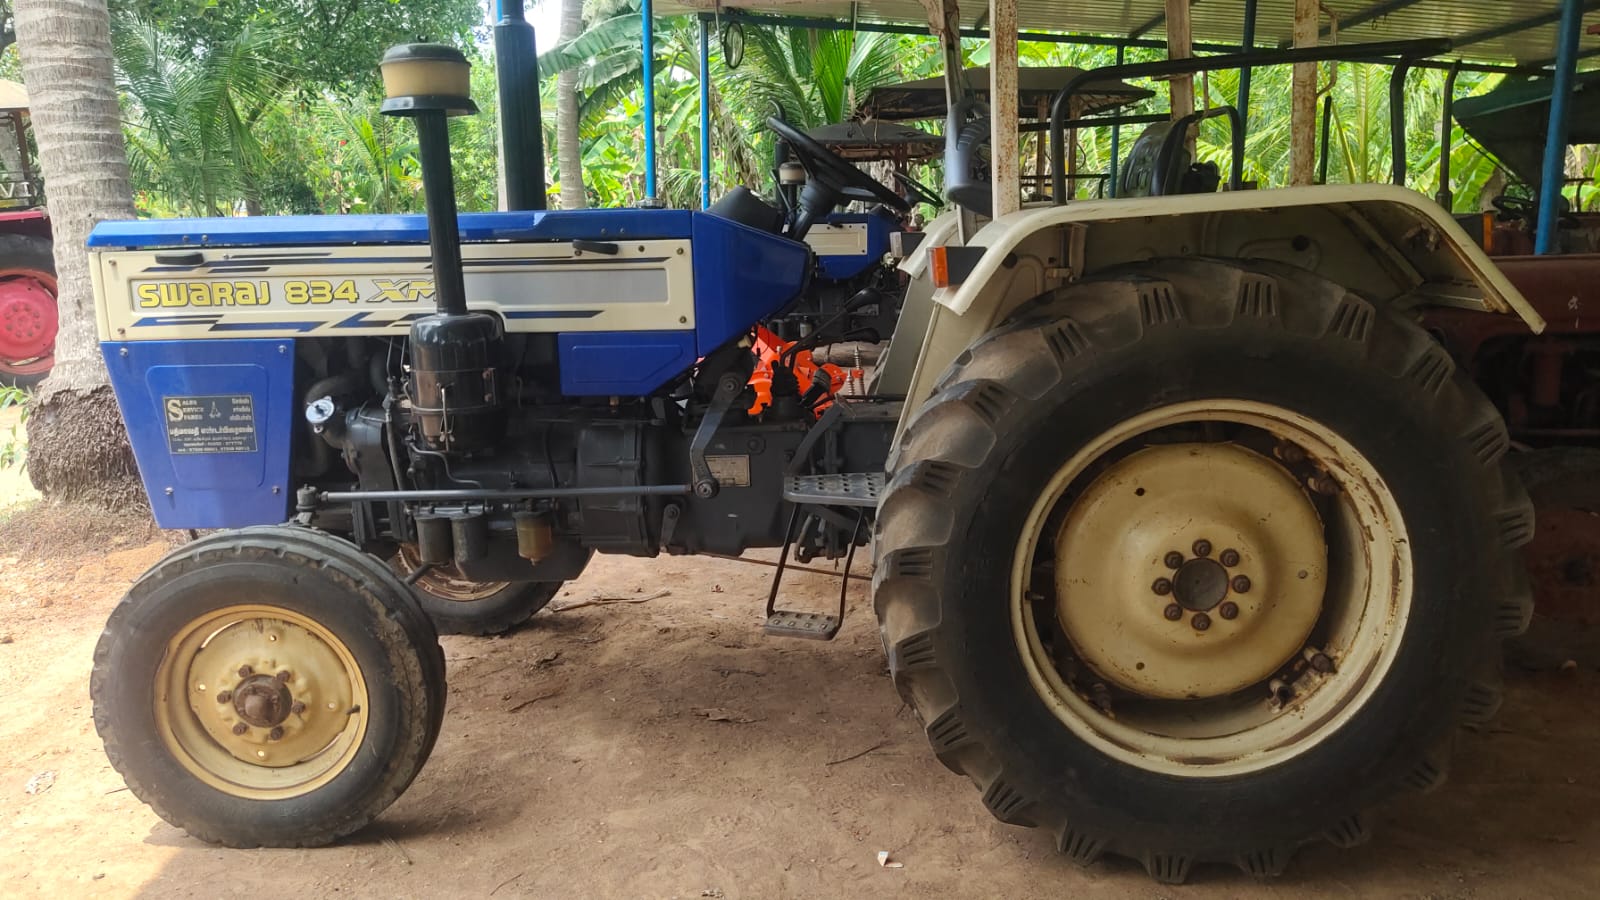 swaraj 834 xm tractor for sales